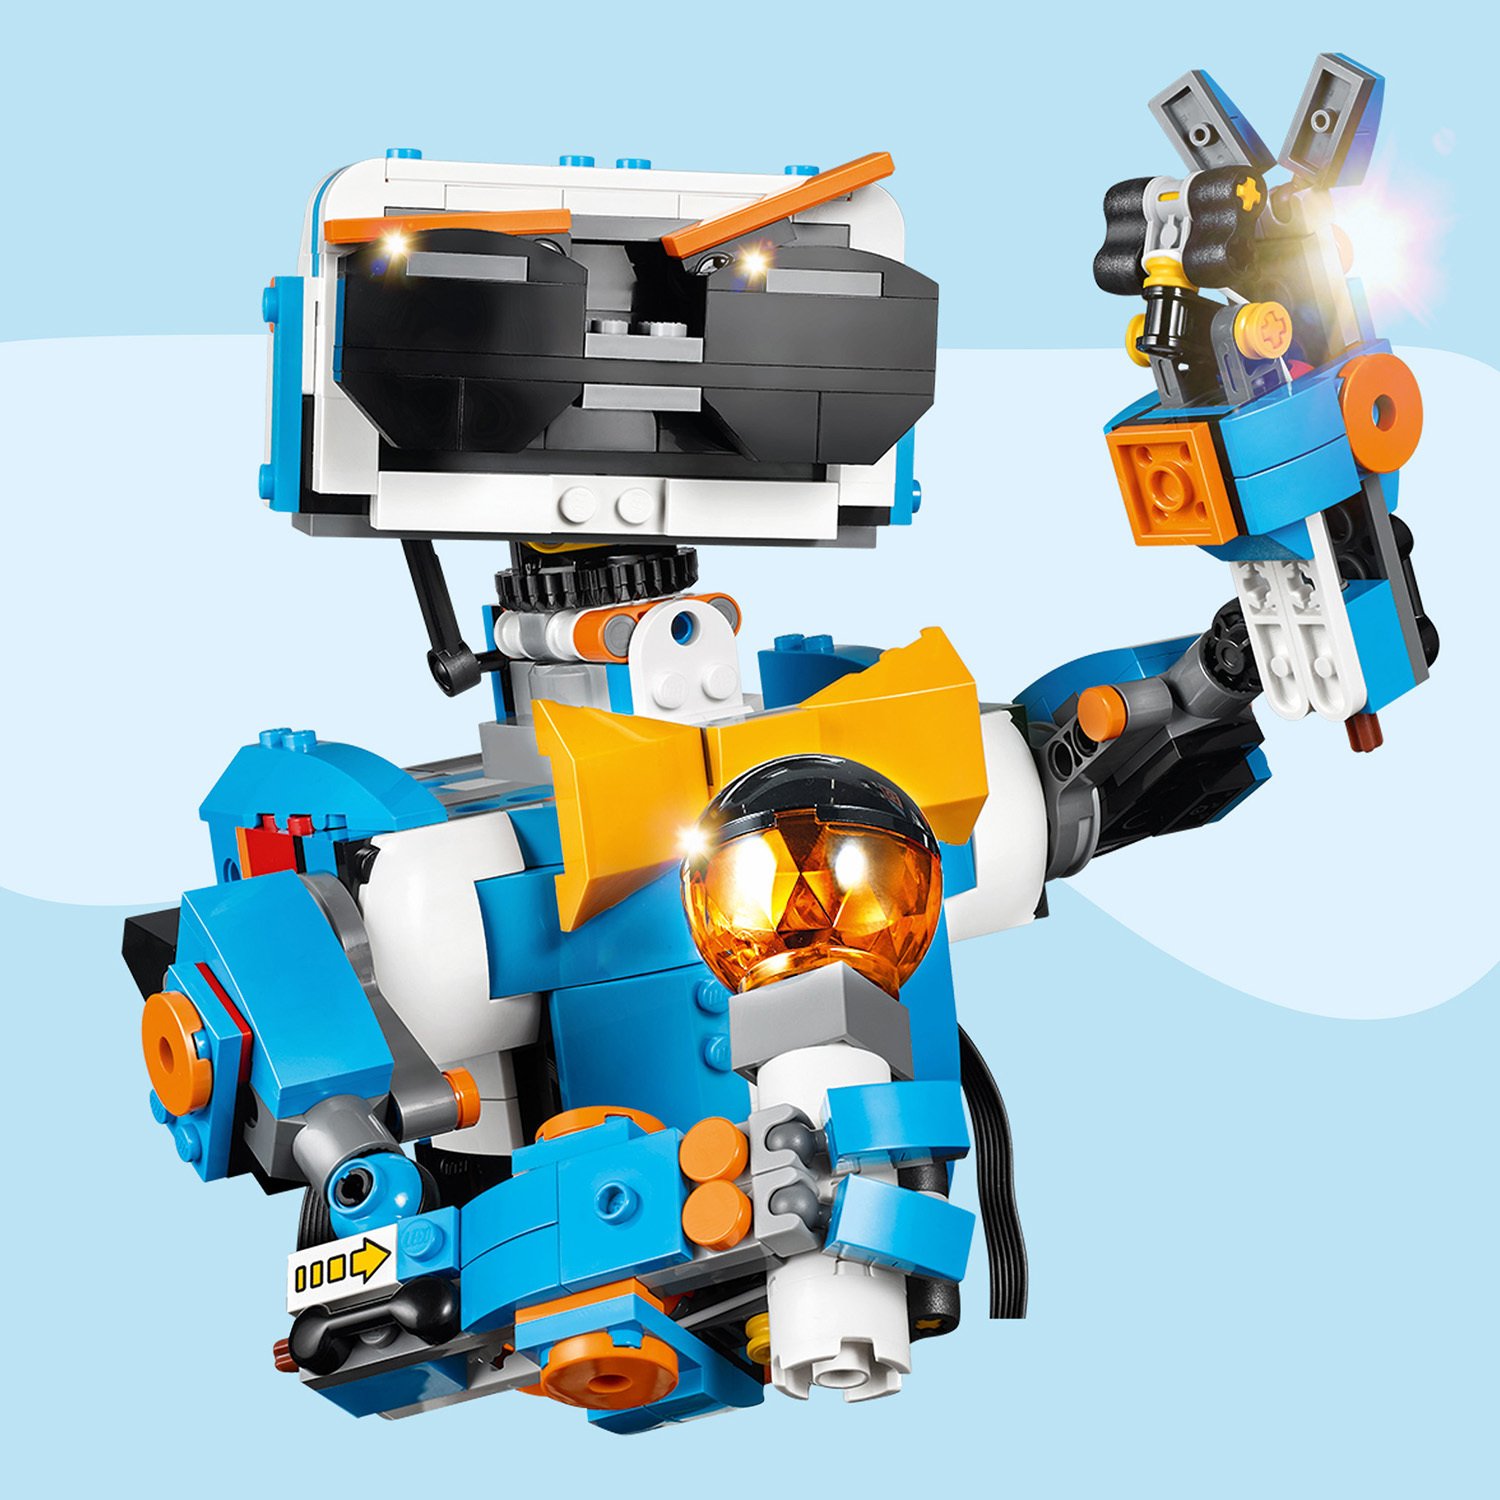 Конструктор Lego Boost - Набор для конструирования и программирования  